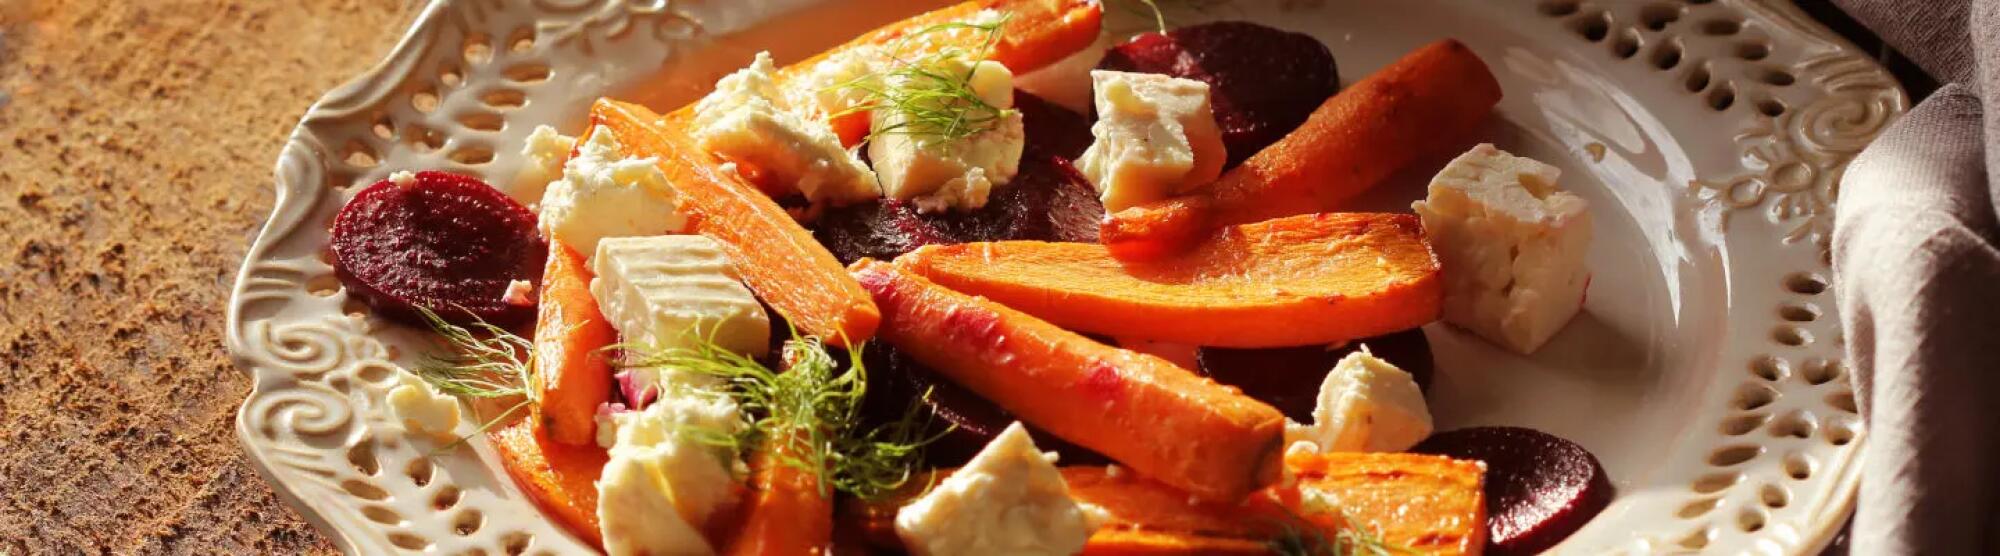 Recette : Salade de carottes aux épices et fromage frais